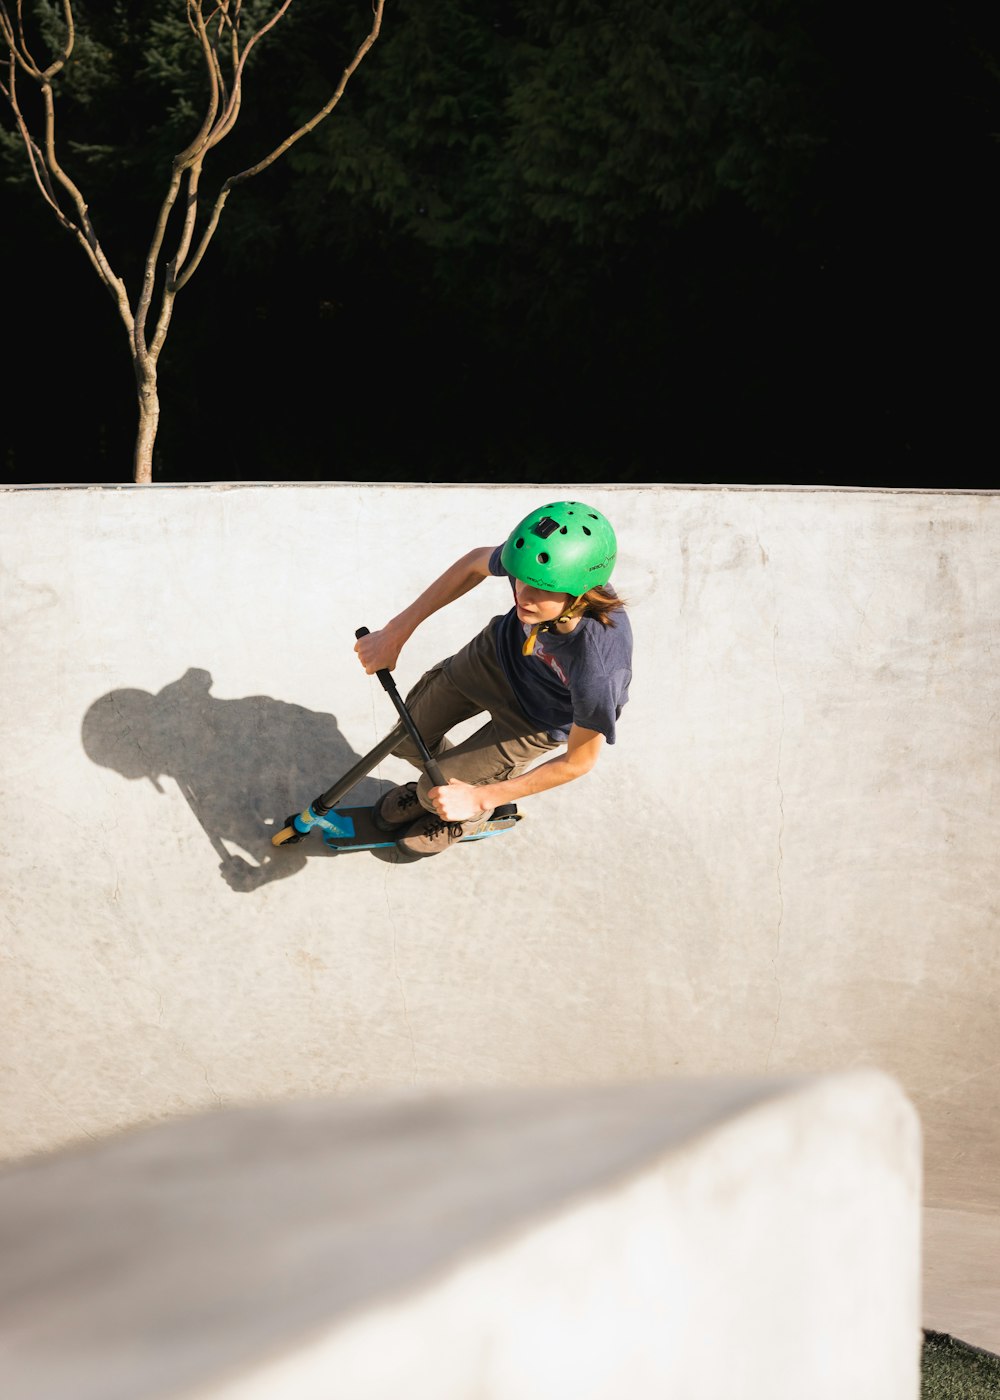 녹색 헬멧을 쓴 소년이 검은 스케이트보드를 타고 있다